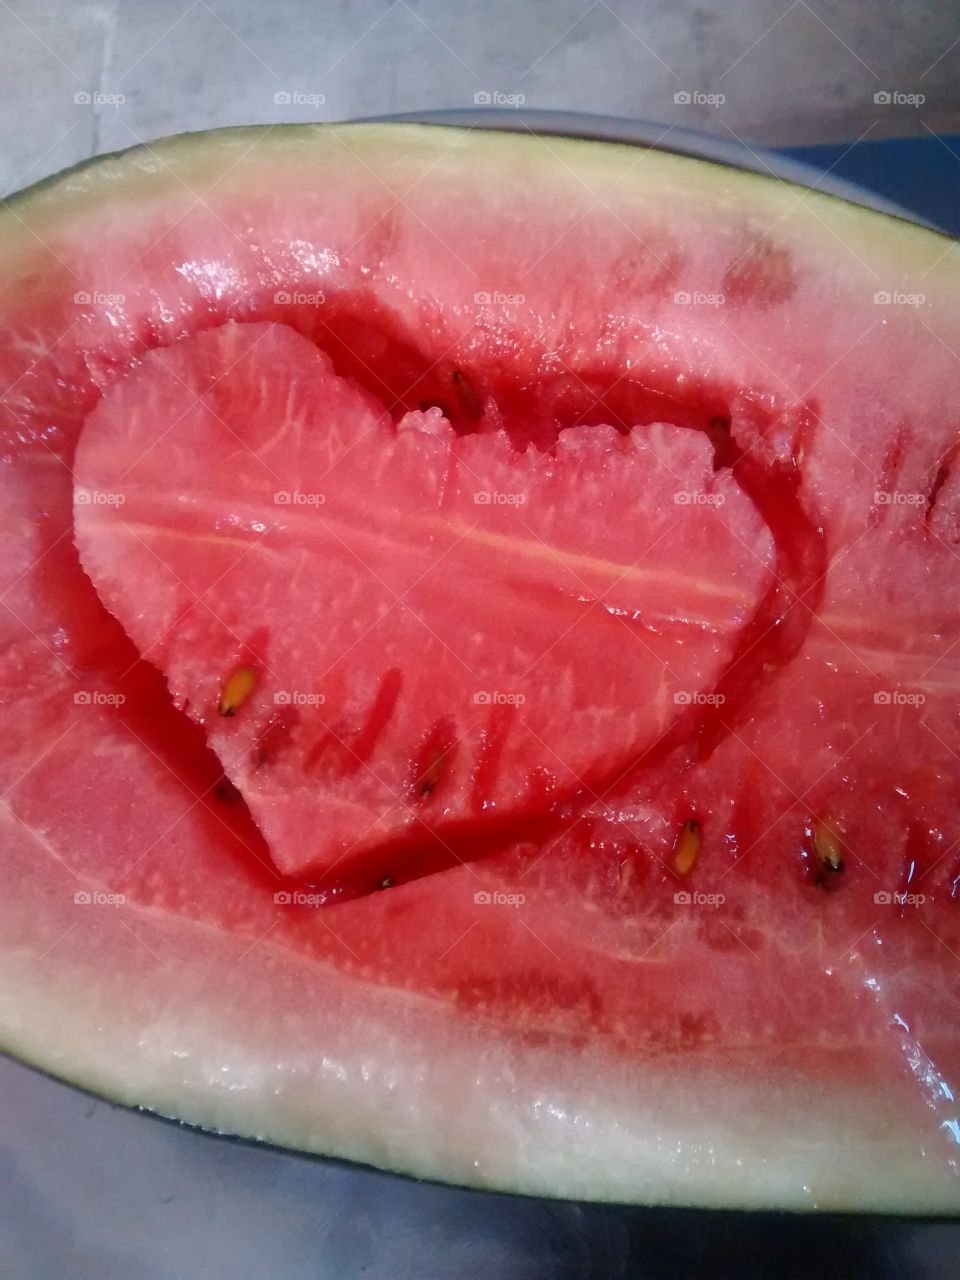 watermelon heart shape red like colour